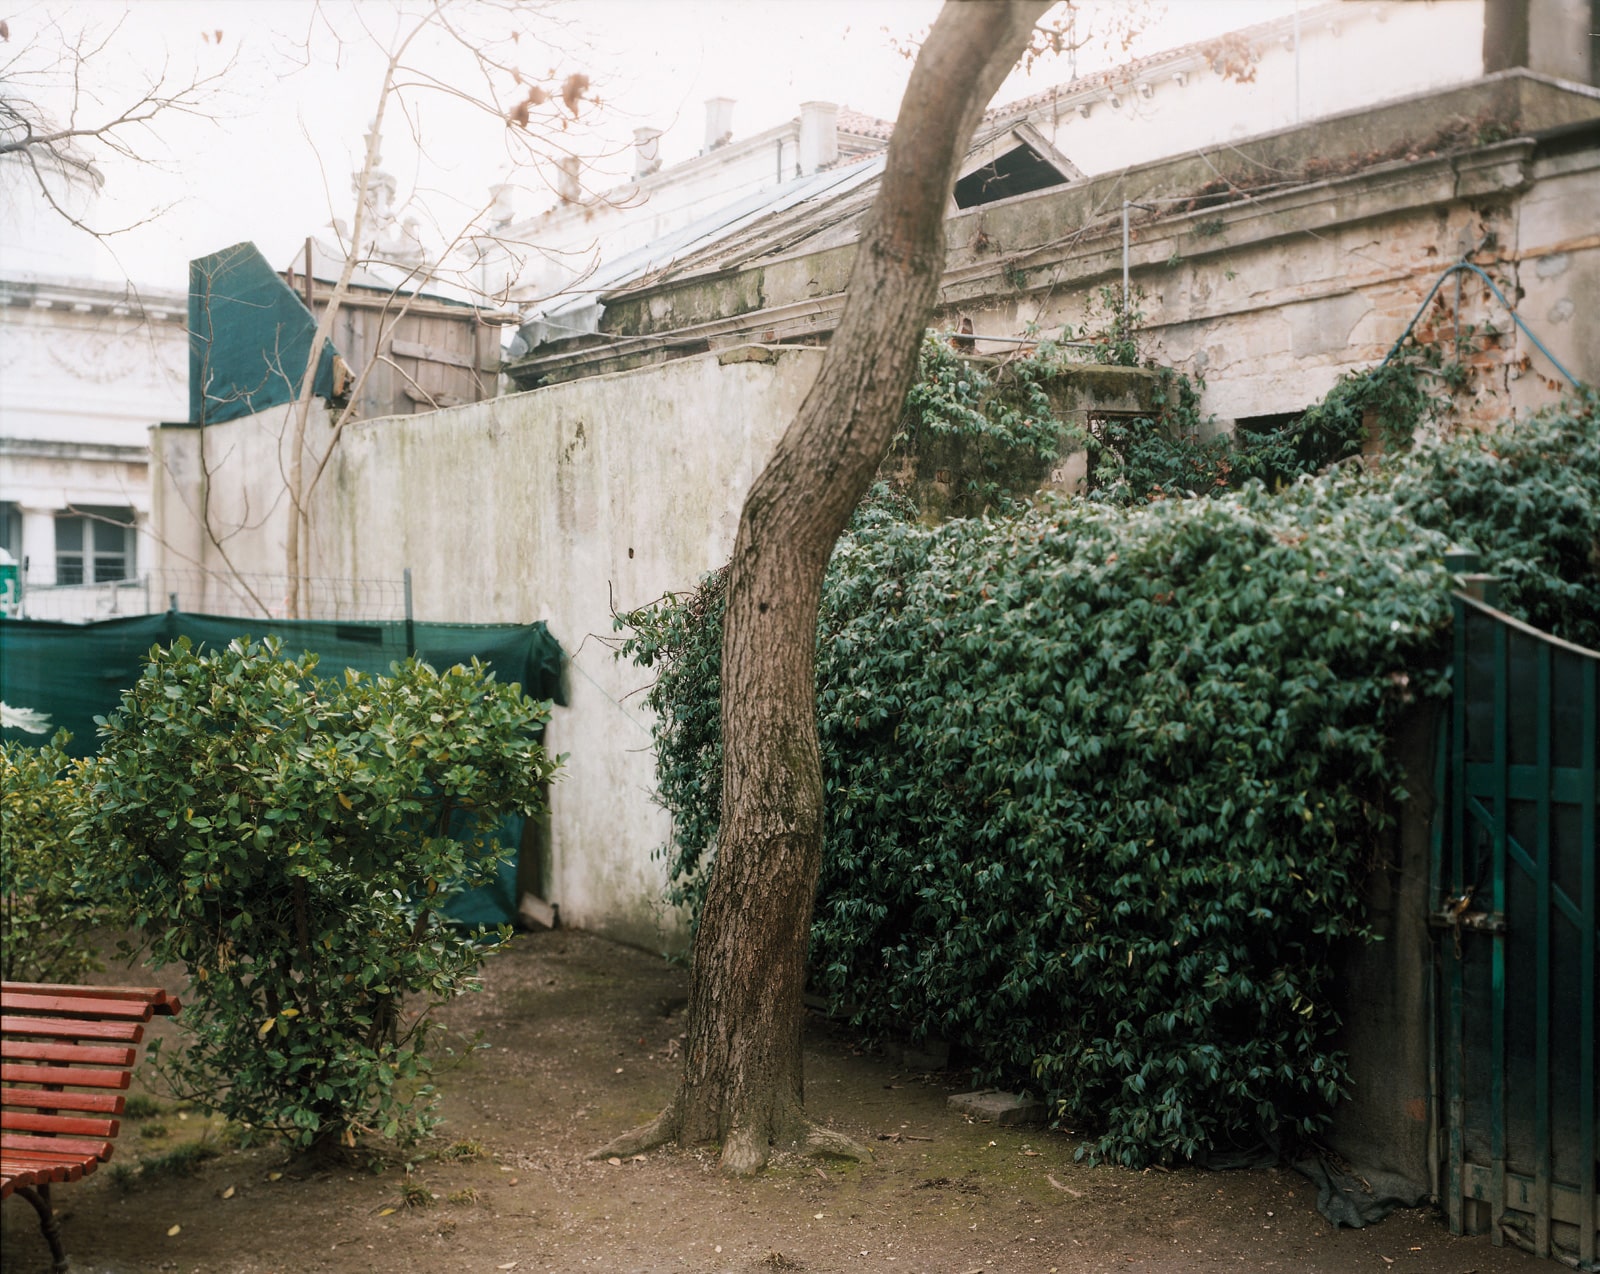 Francesco Neri, Giardini Reali, edifici incongrui in rovina, lato ovest del giardino, 2014